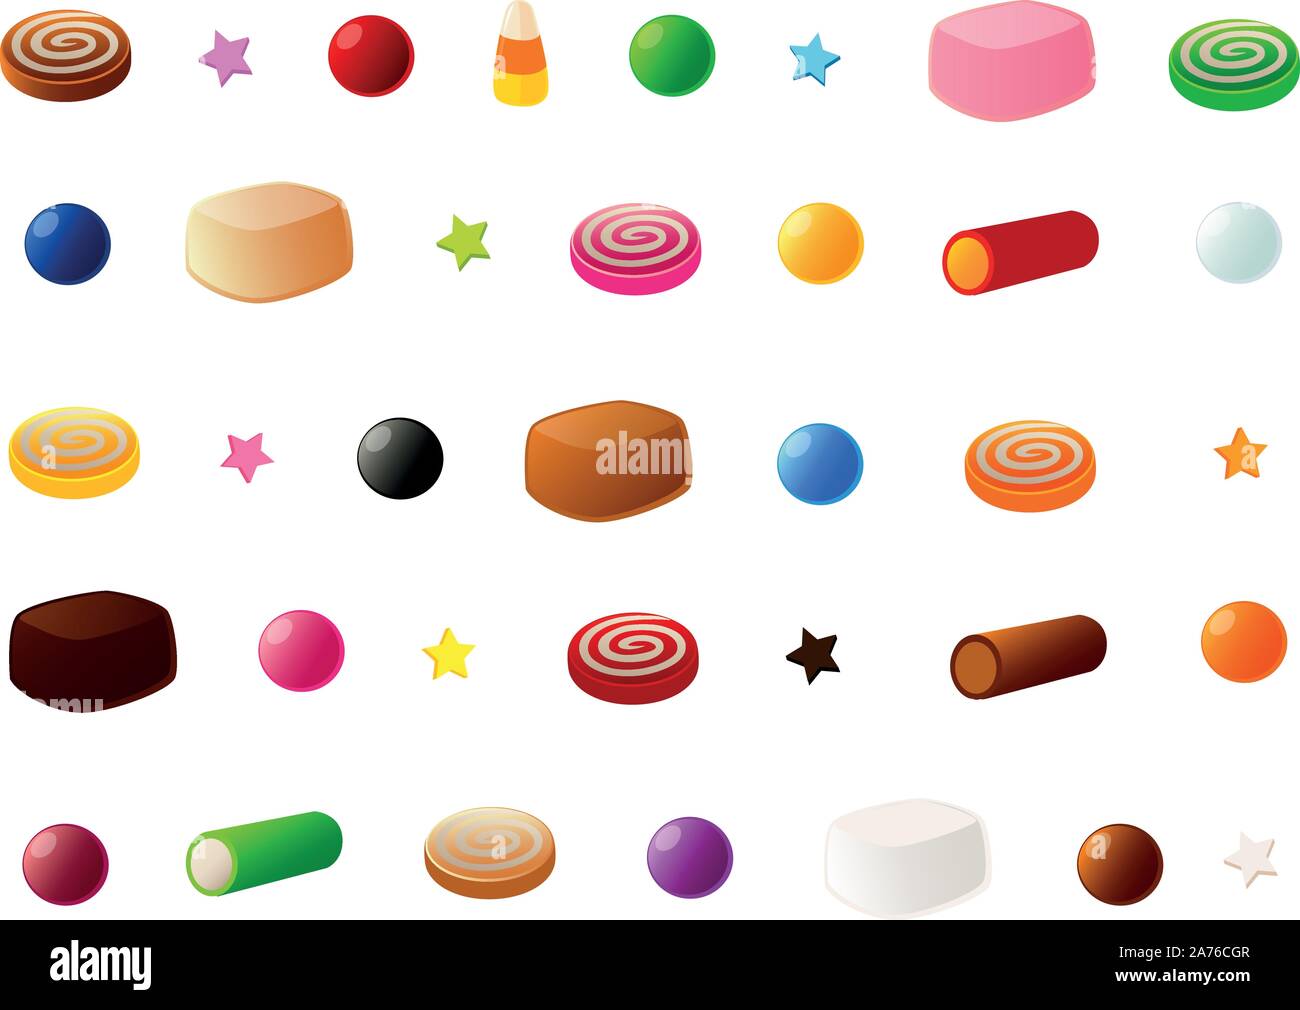 Illustrazione Vettoriale di vari tipi di caramelle e gomma di gocce. Illustrazione Vettoriale